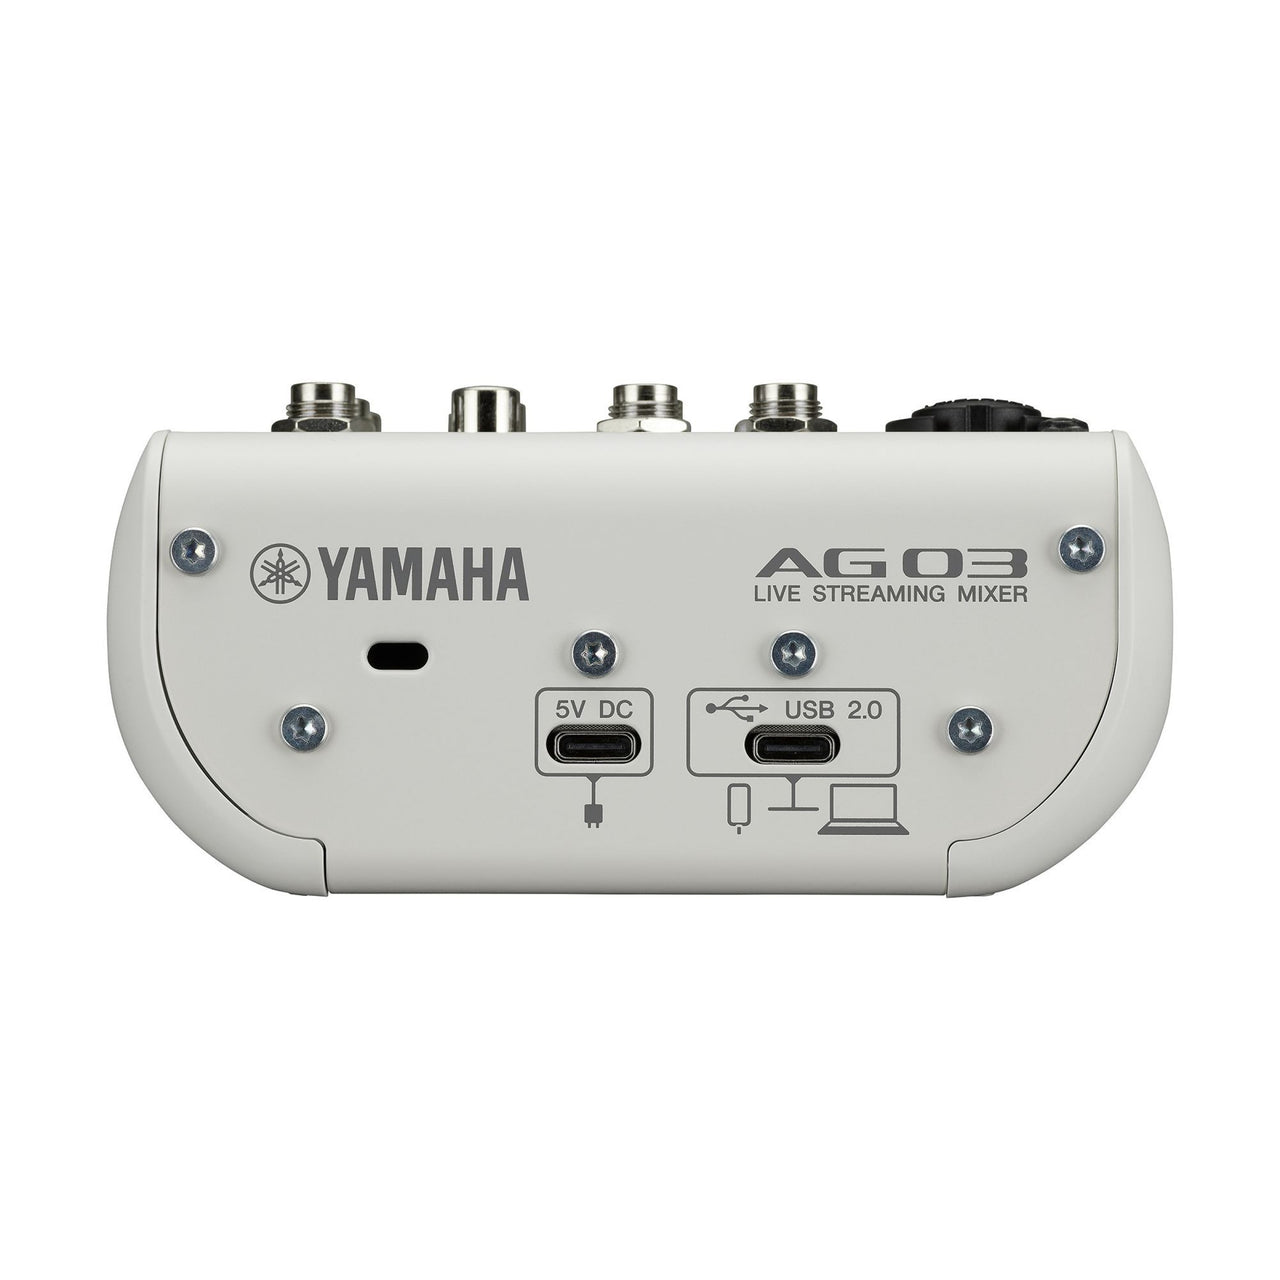 Mezcladora Yamaha 3 Canales P/streaming, Ag03mk2w